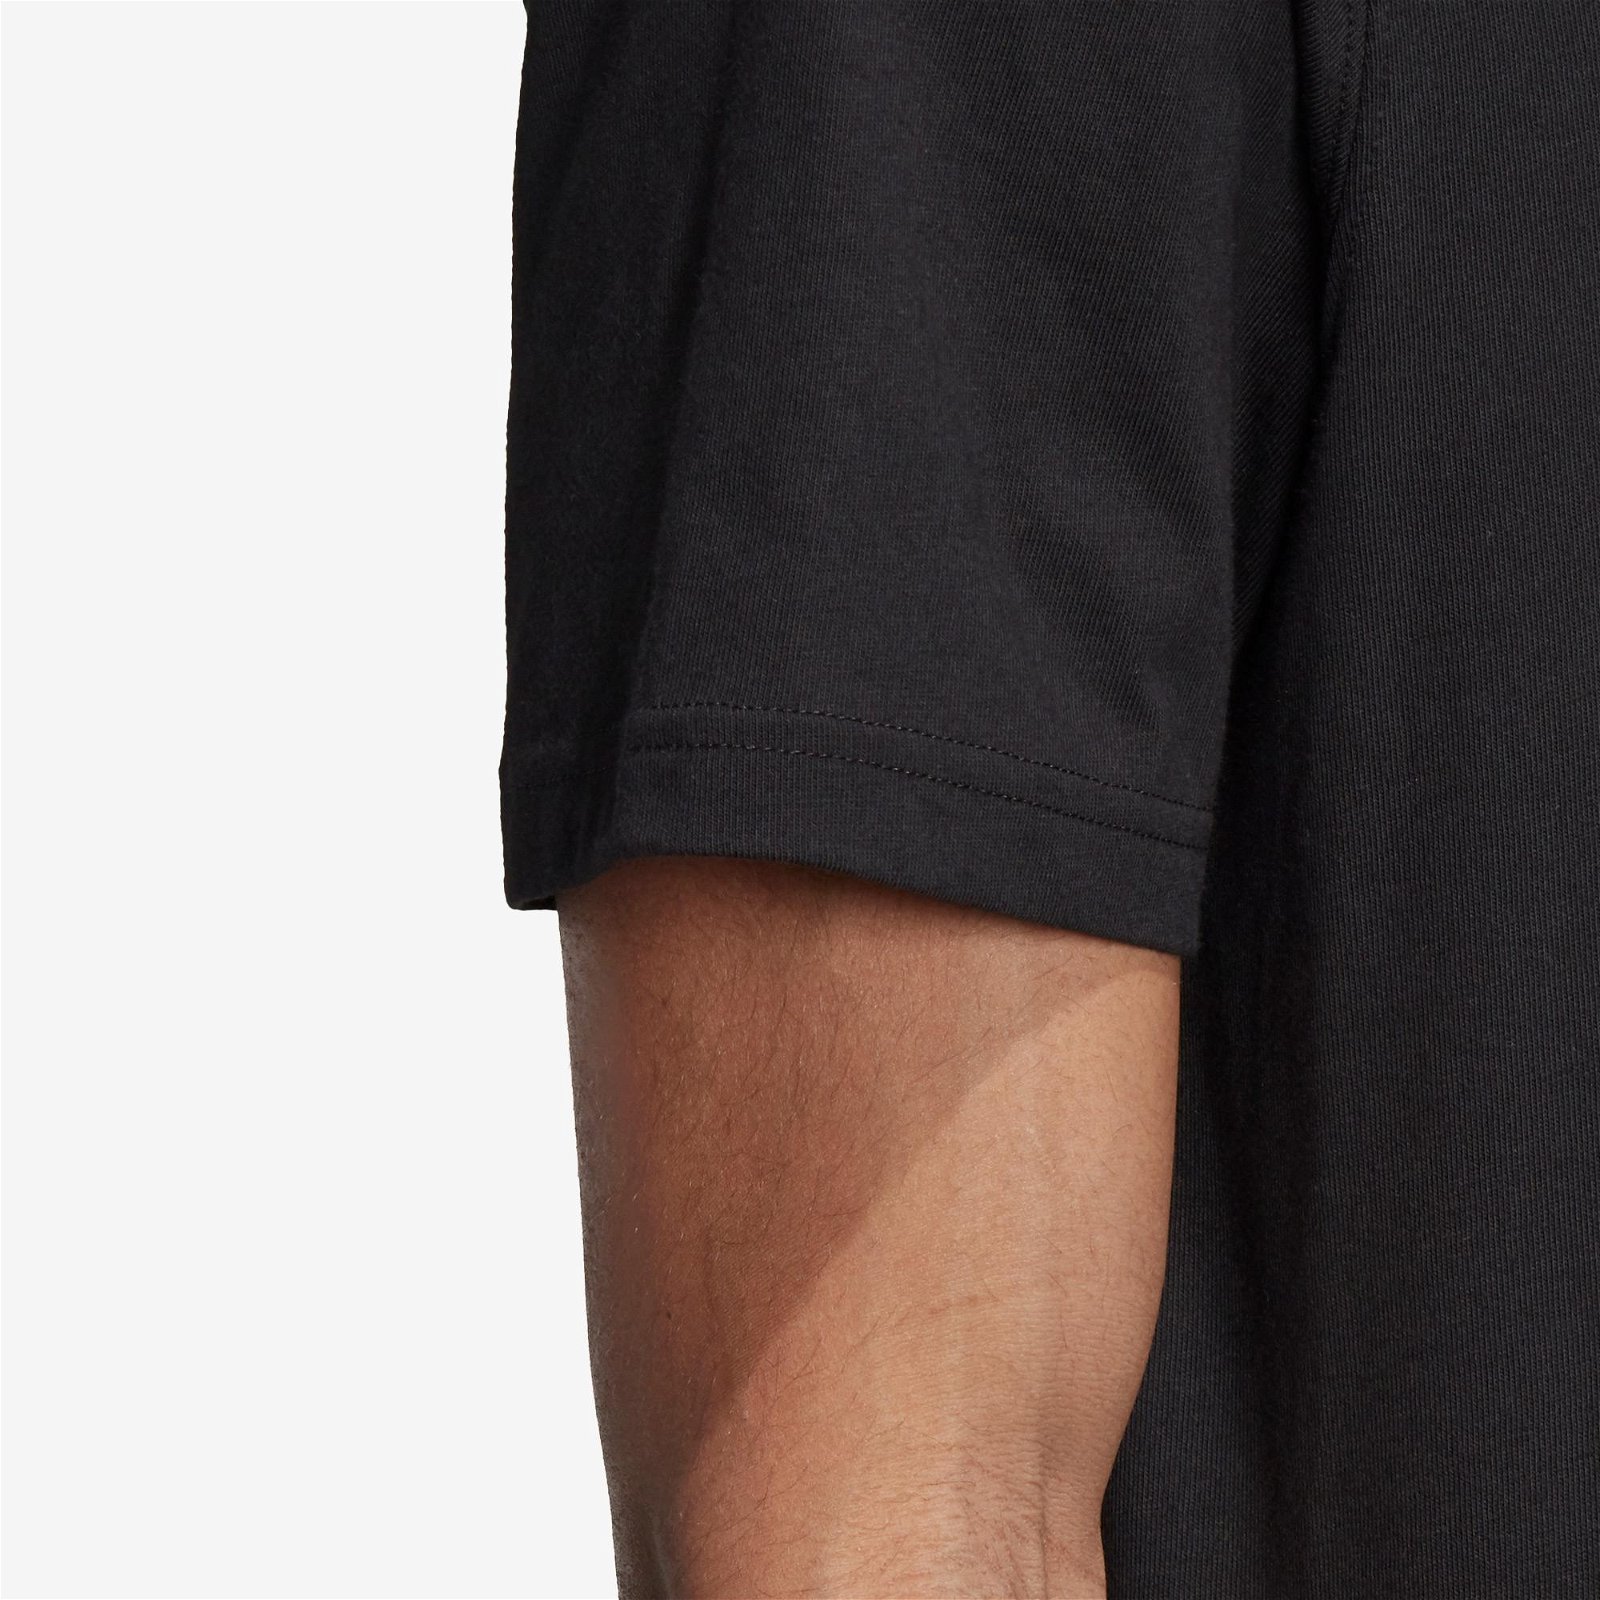 adidas Torsion Siyah T-Shirt